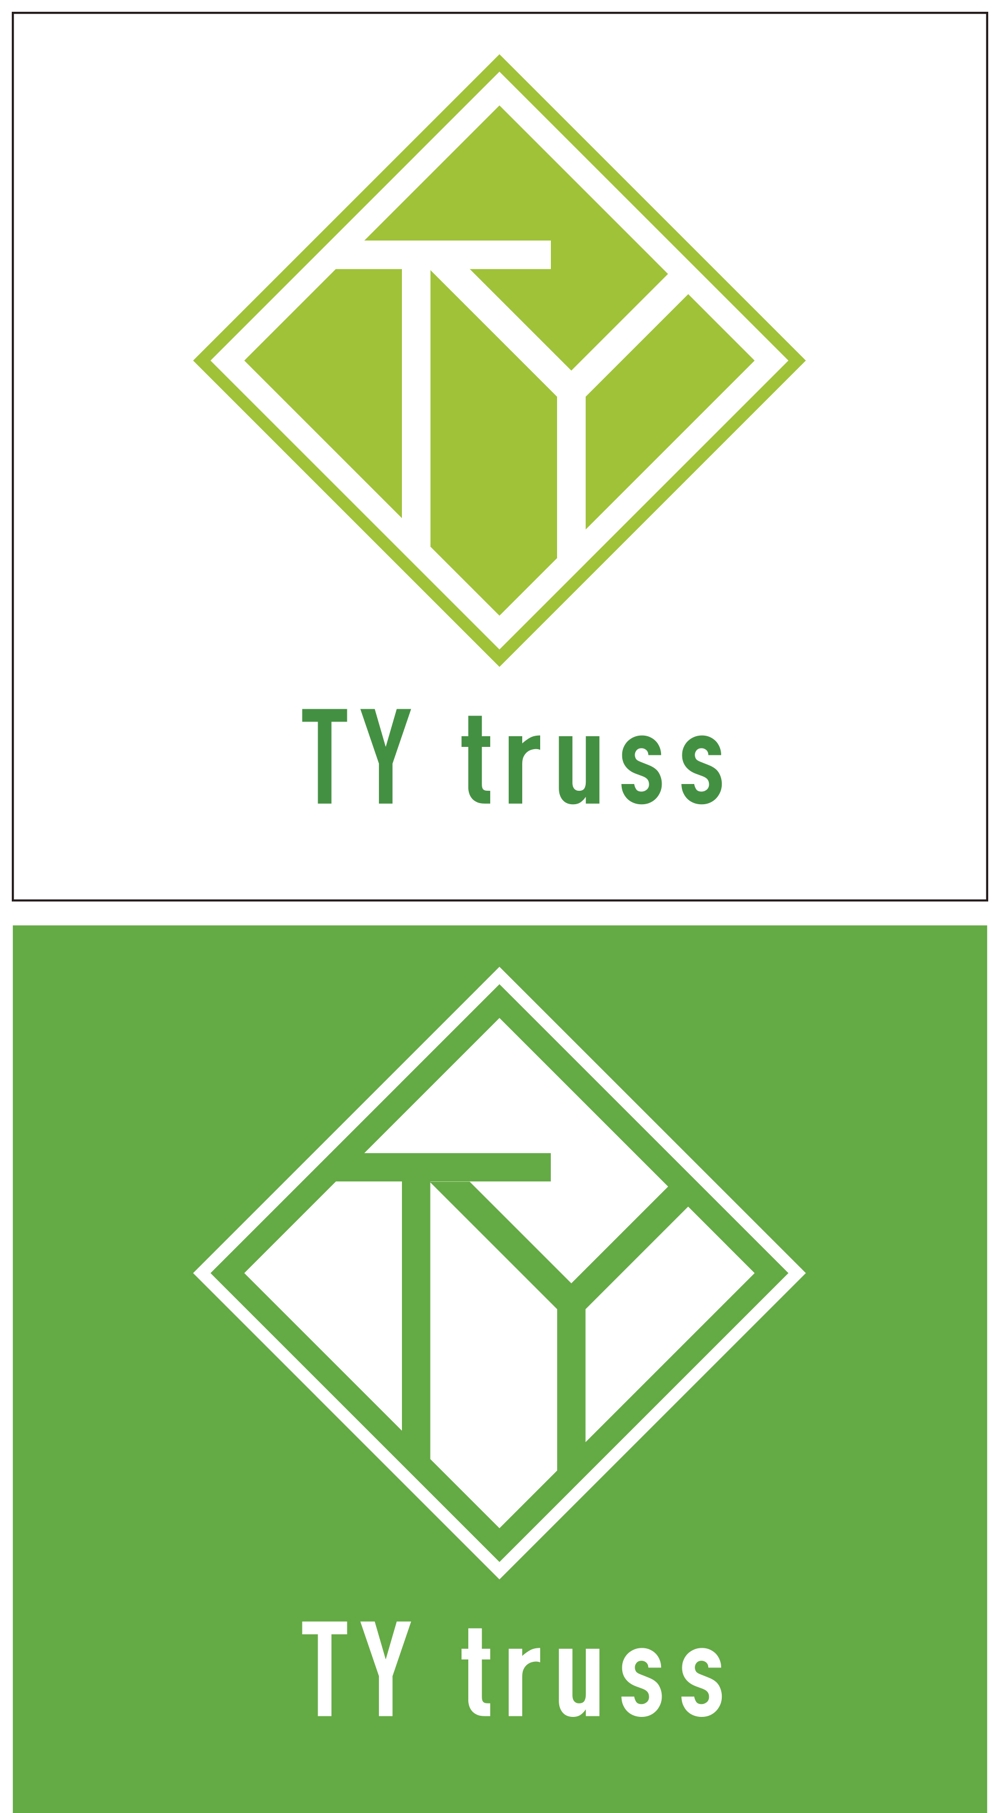 TY truss-001.jpg